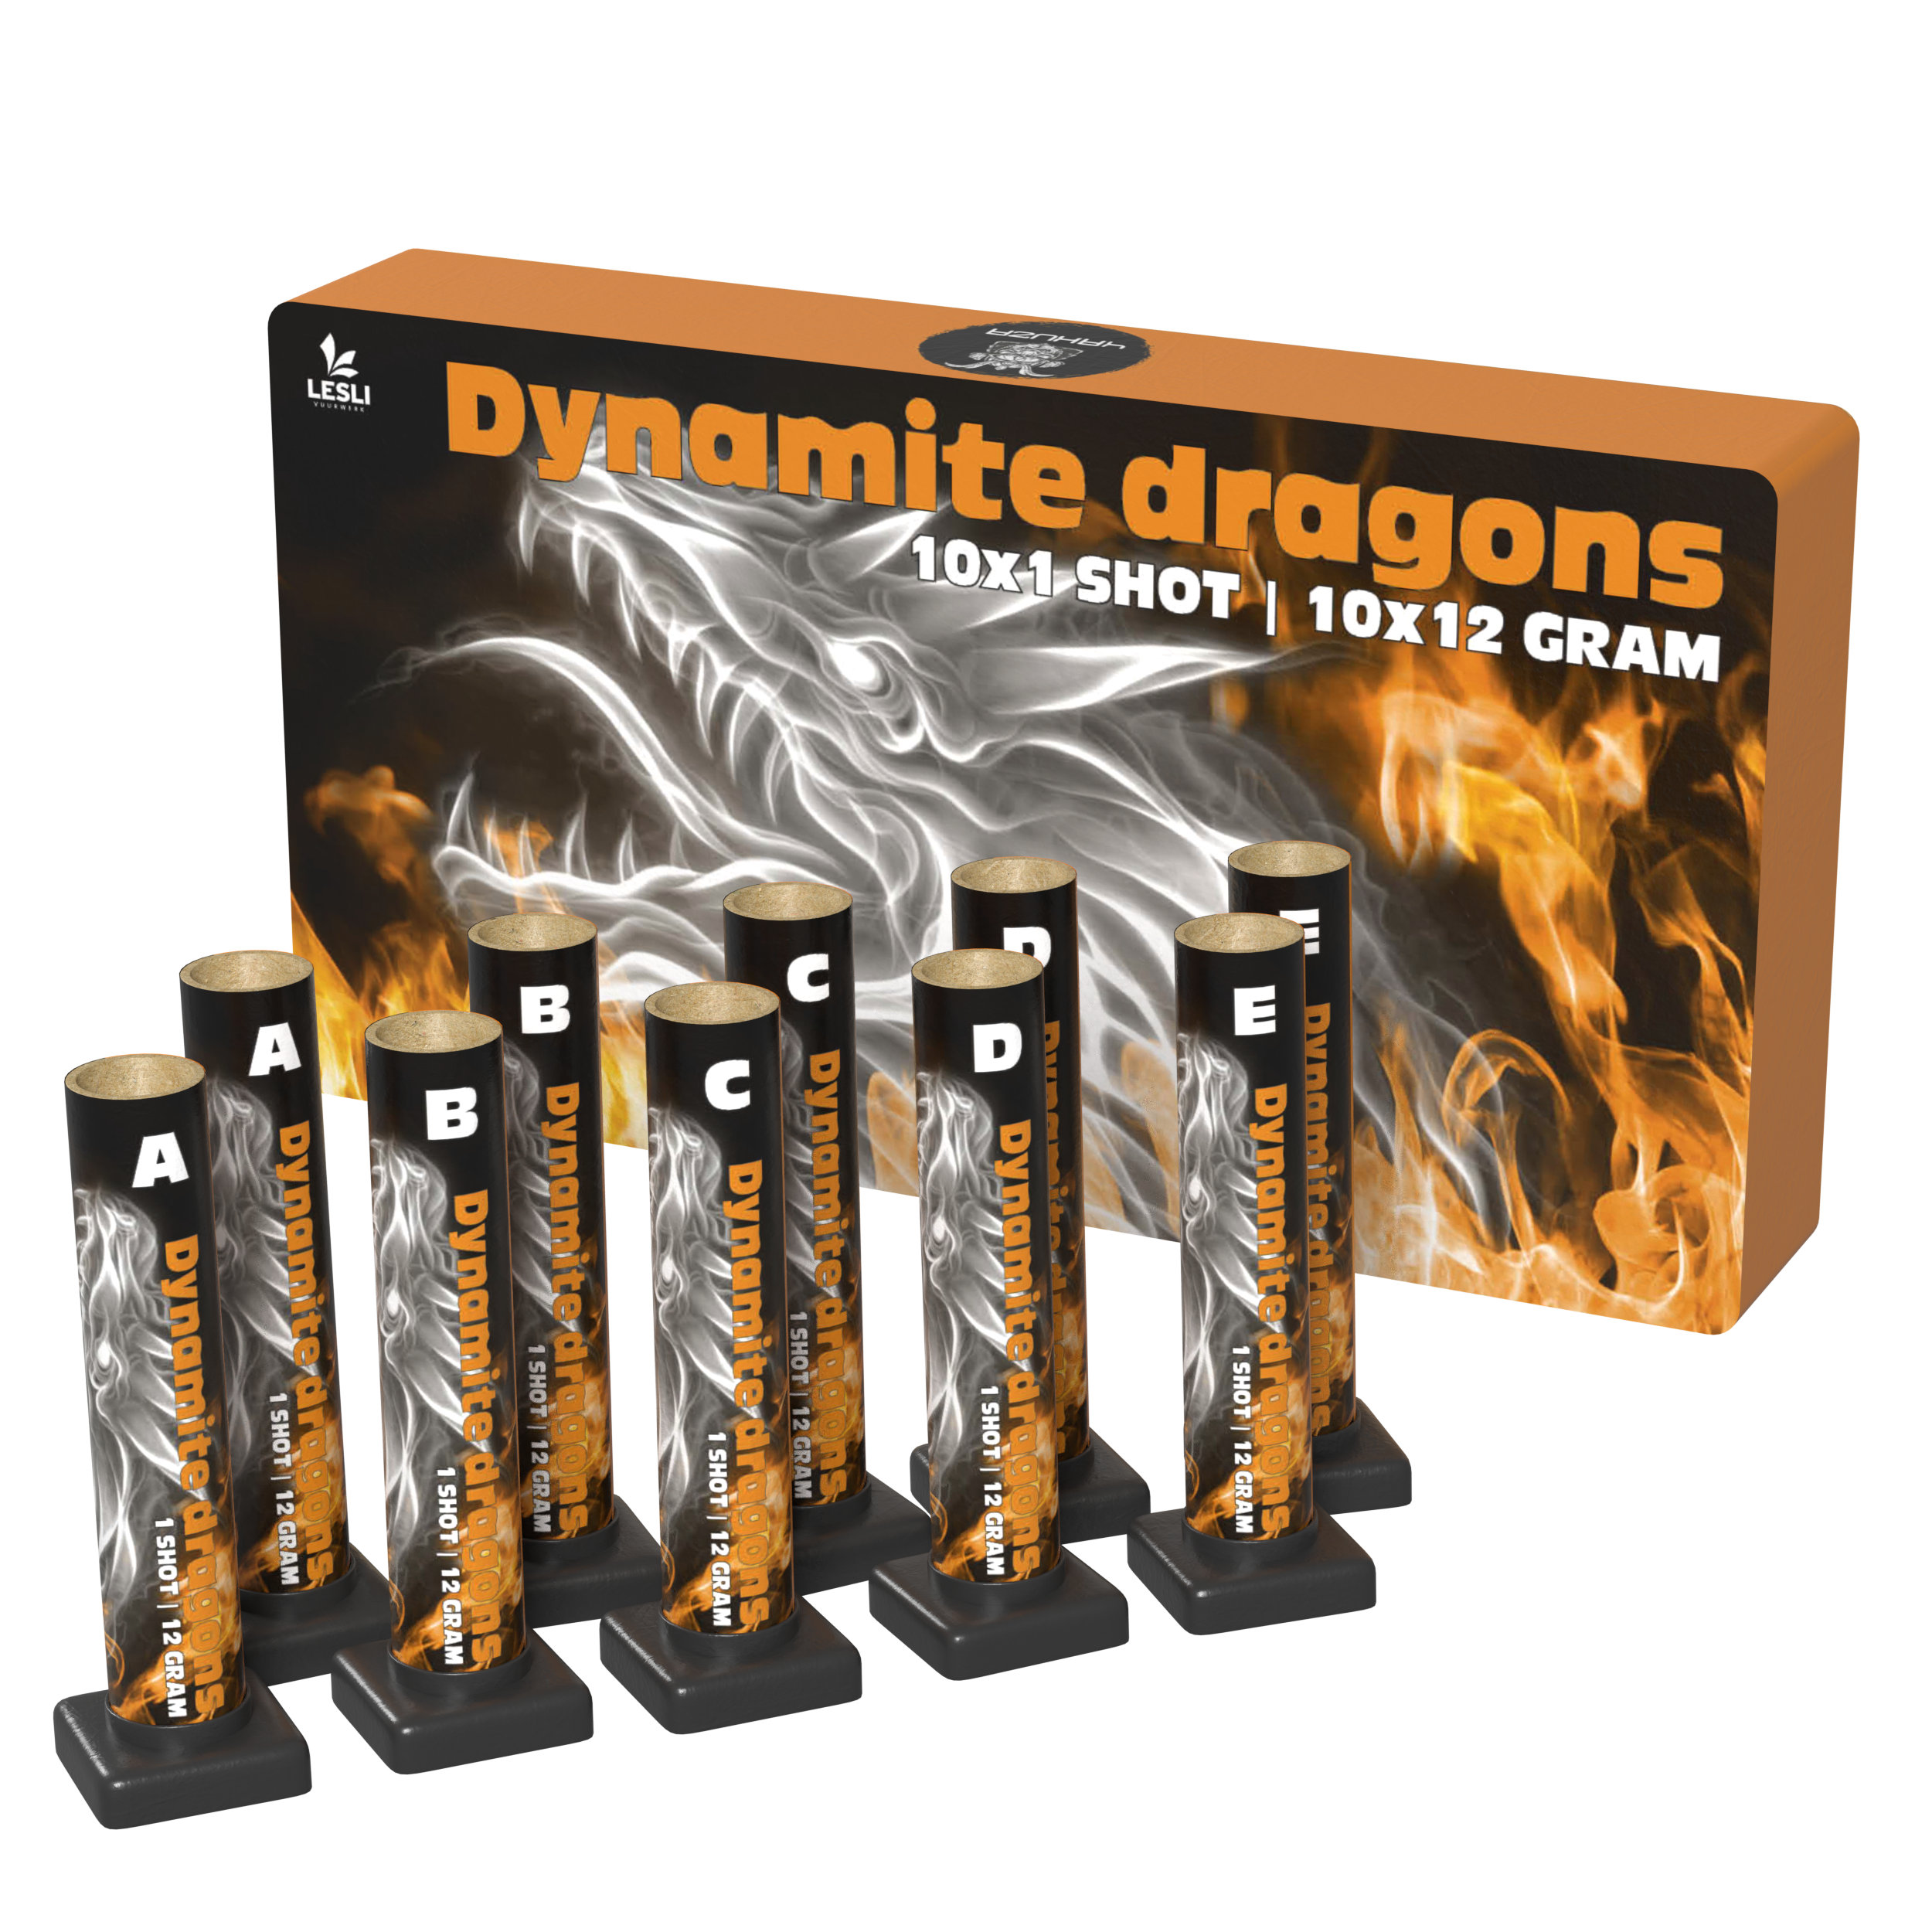 03872 Dynamite dragons.png